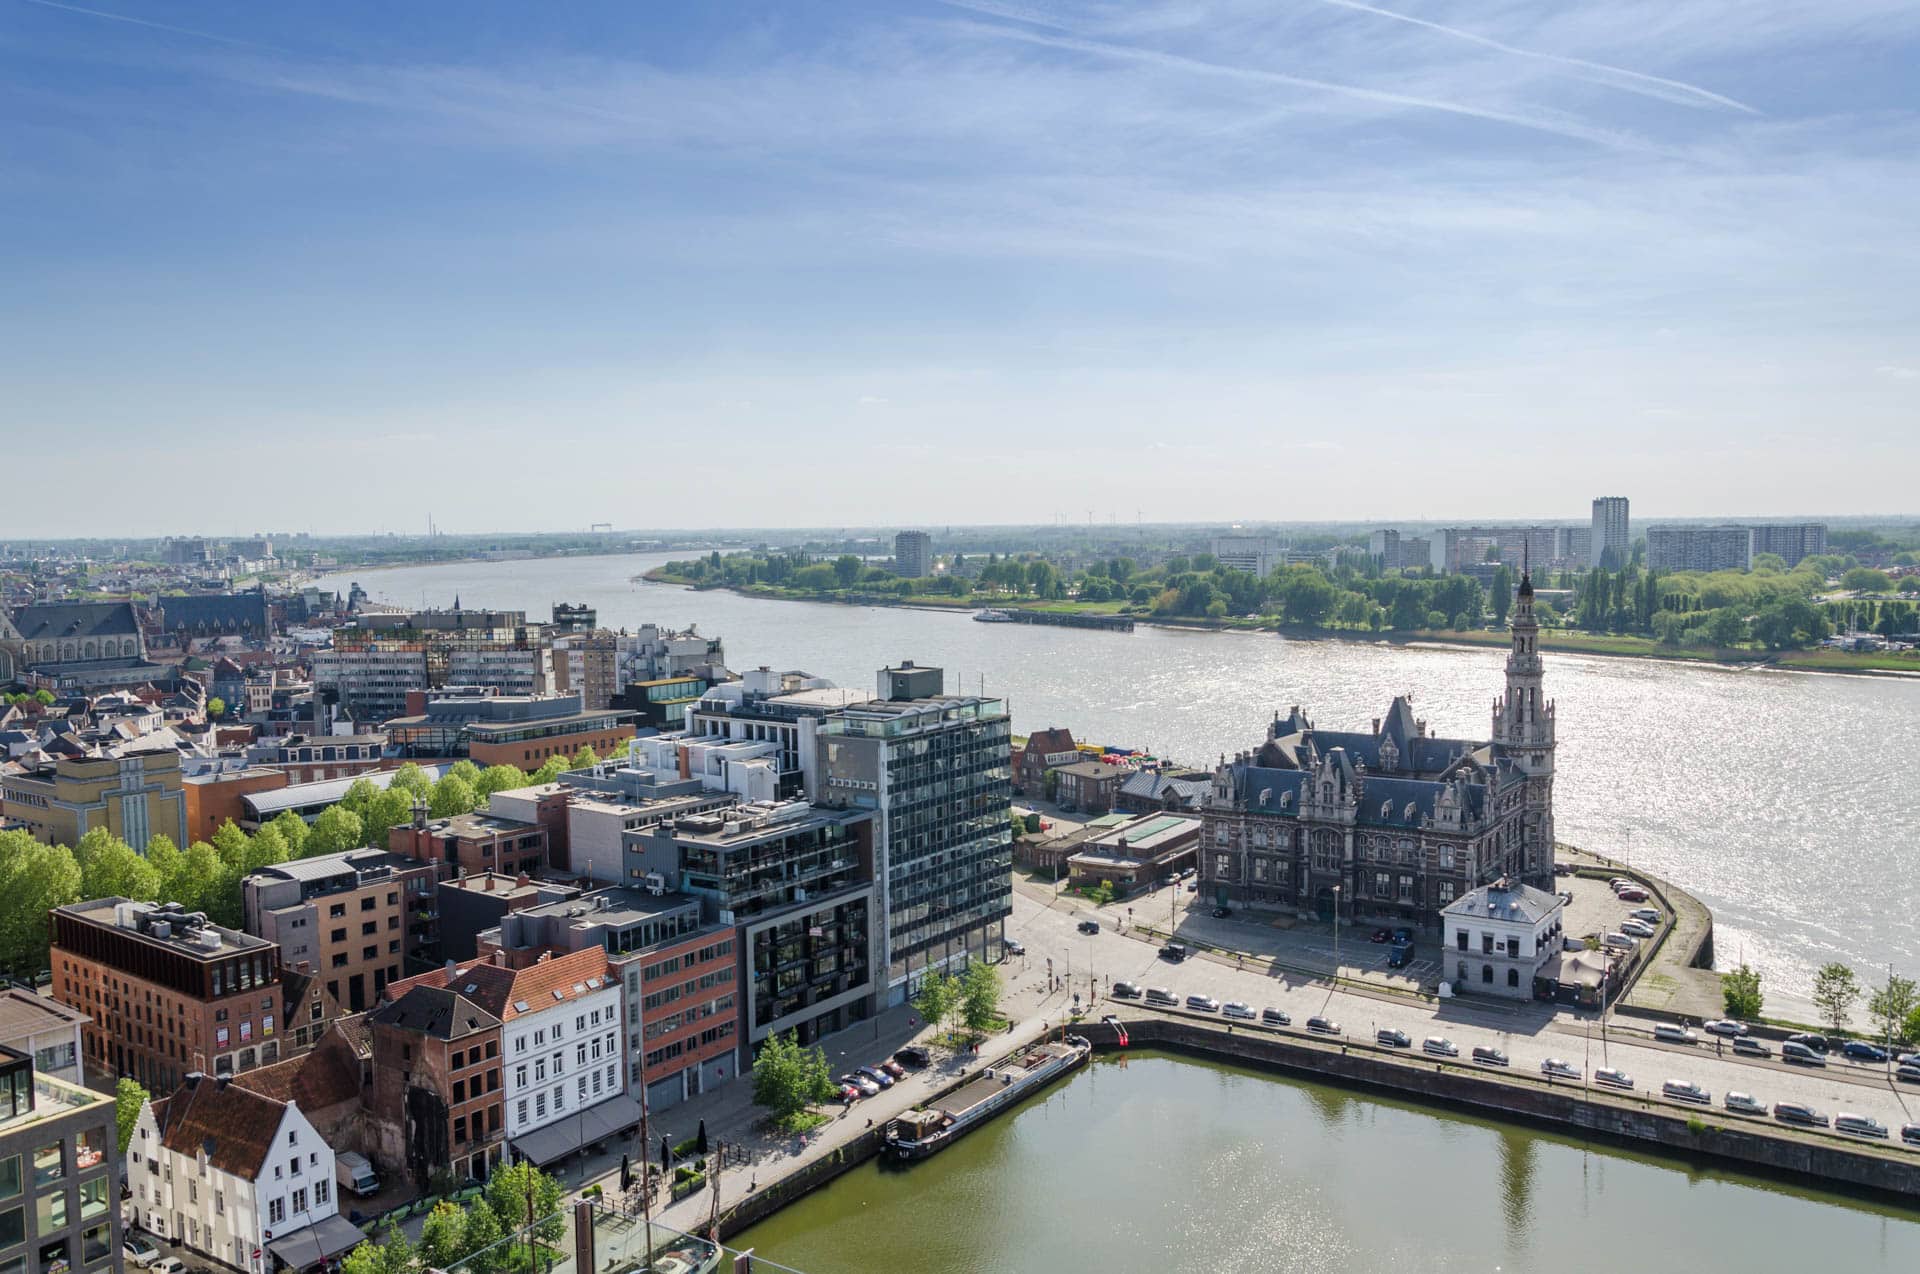 Sky View in Antwerp